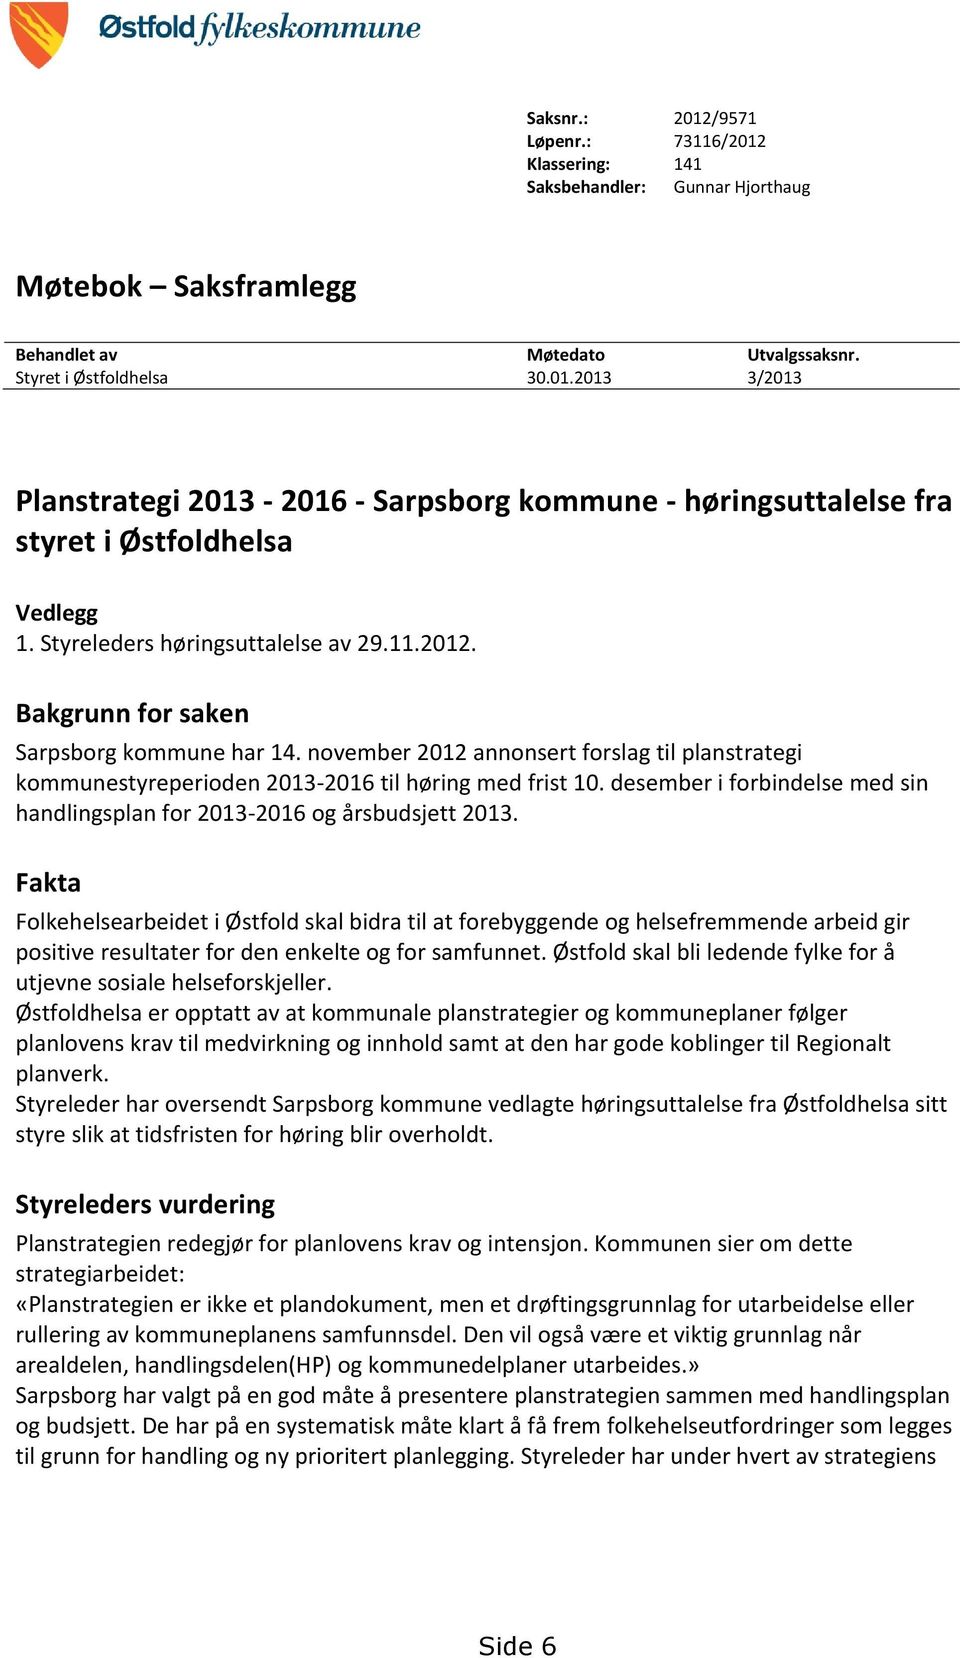 desember i forbindelse med sin handlingsplan for 2013-2016 og årsbudsjett 2013.